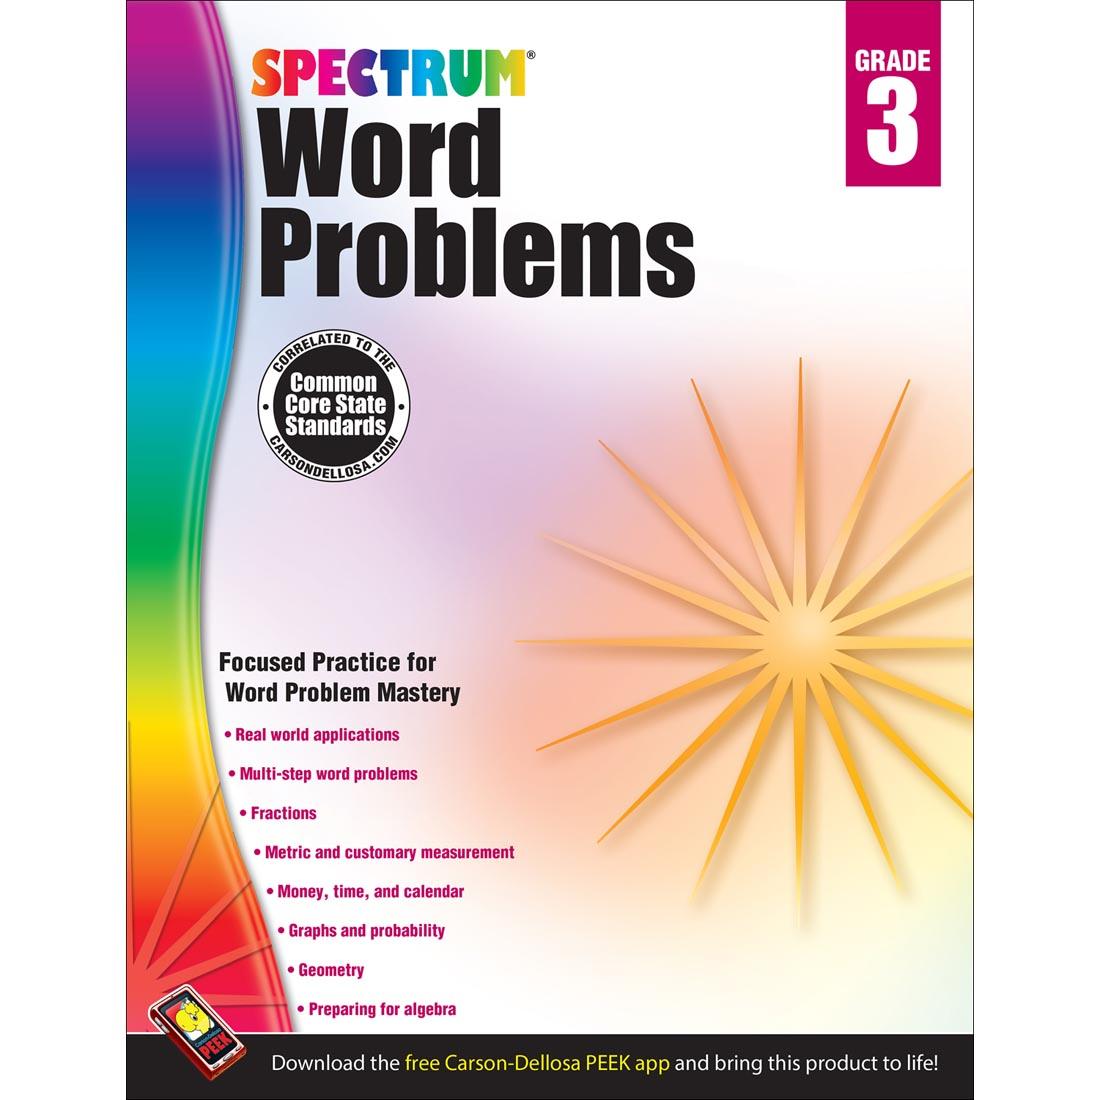 Spectrum Word Problems by Carson Dellosa Grade 3